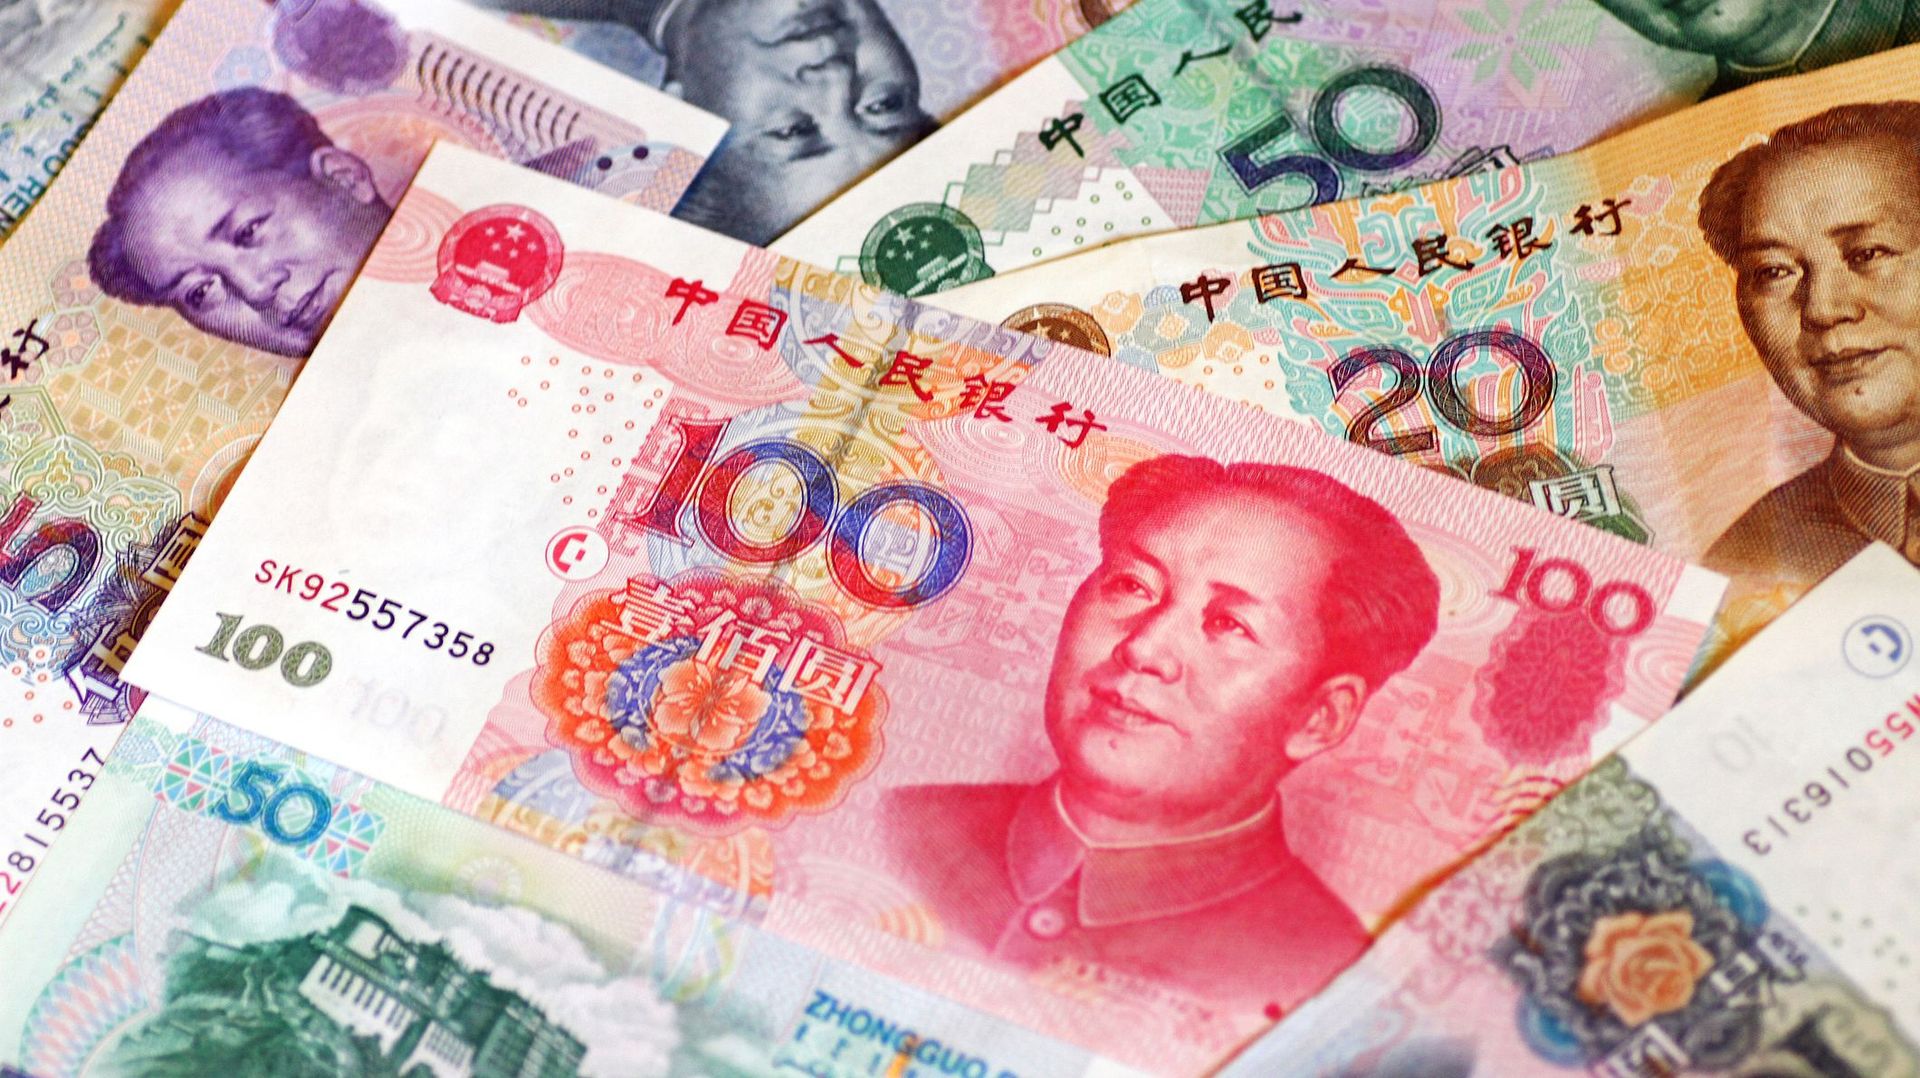 Le gouvernement chinois a mis en quarantaine des billets de banque. Il n’en a pas fallu plus pour alimenter les rumeurs.